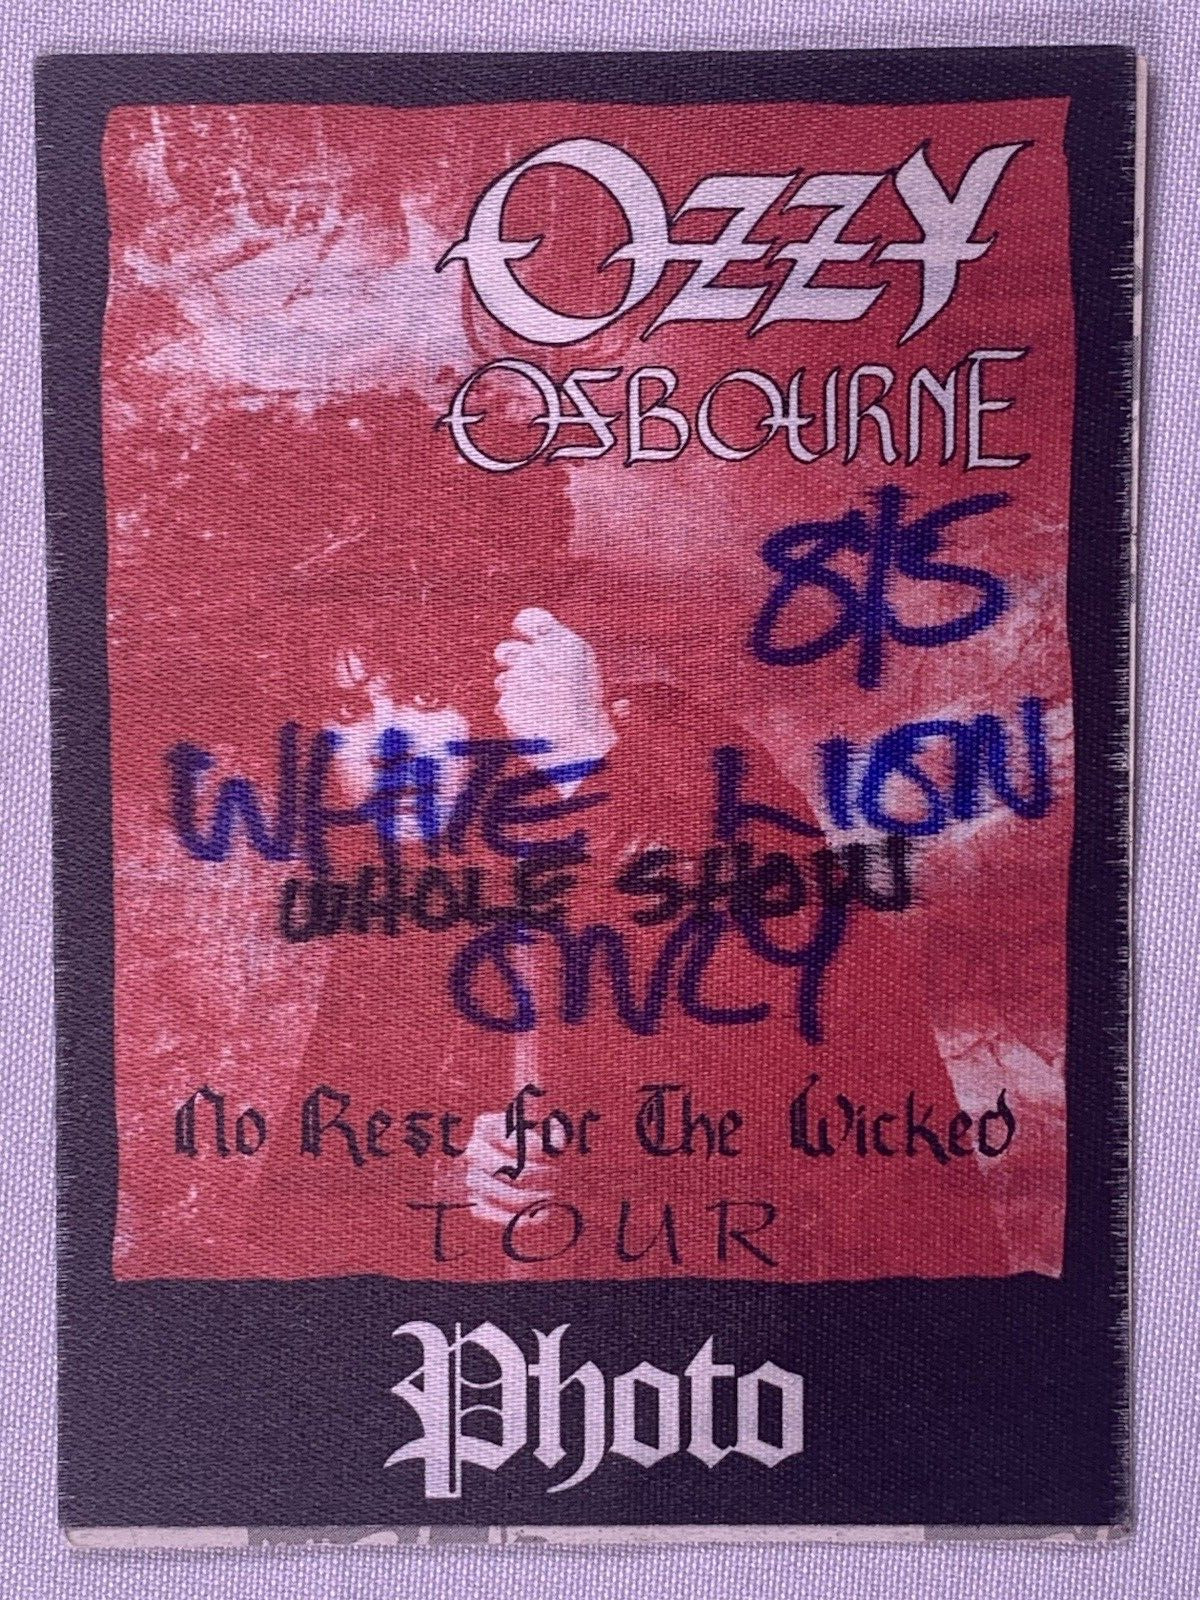 Ozzy Osbourne Ticket Pass Original No Rest for the Wicked Sacramento CA 1989